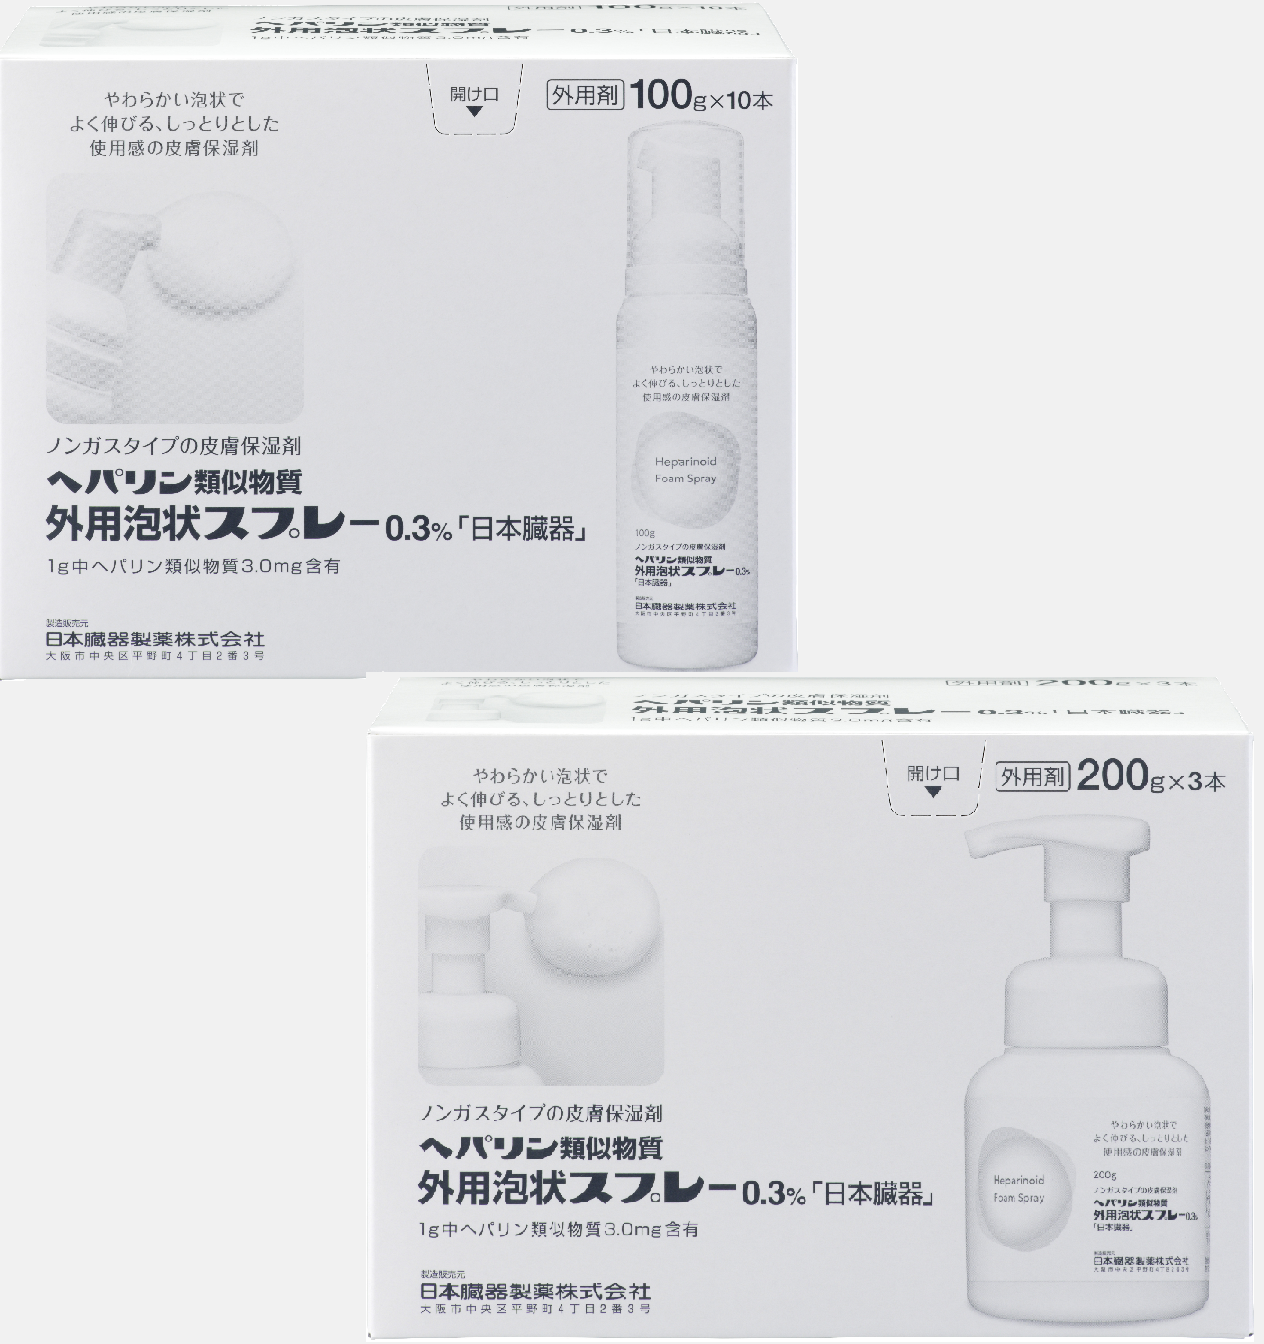 ヘパリン類似物質外用泡状スプレー0.3%「日本臓器」